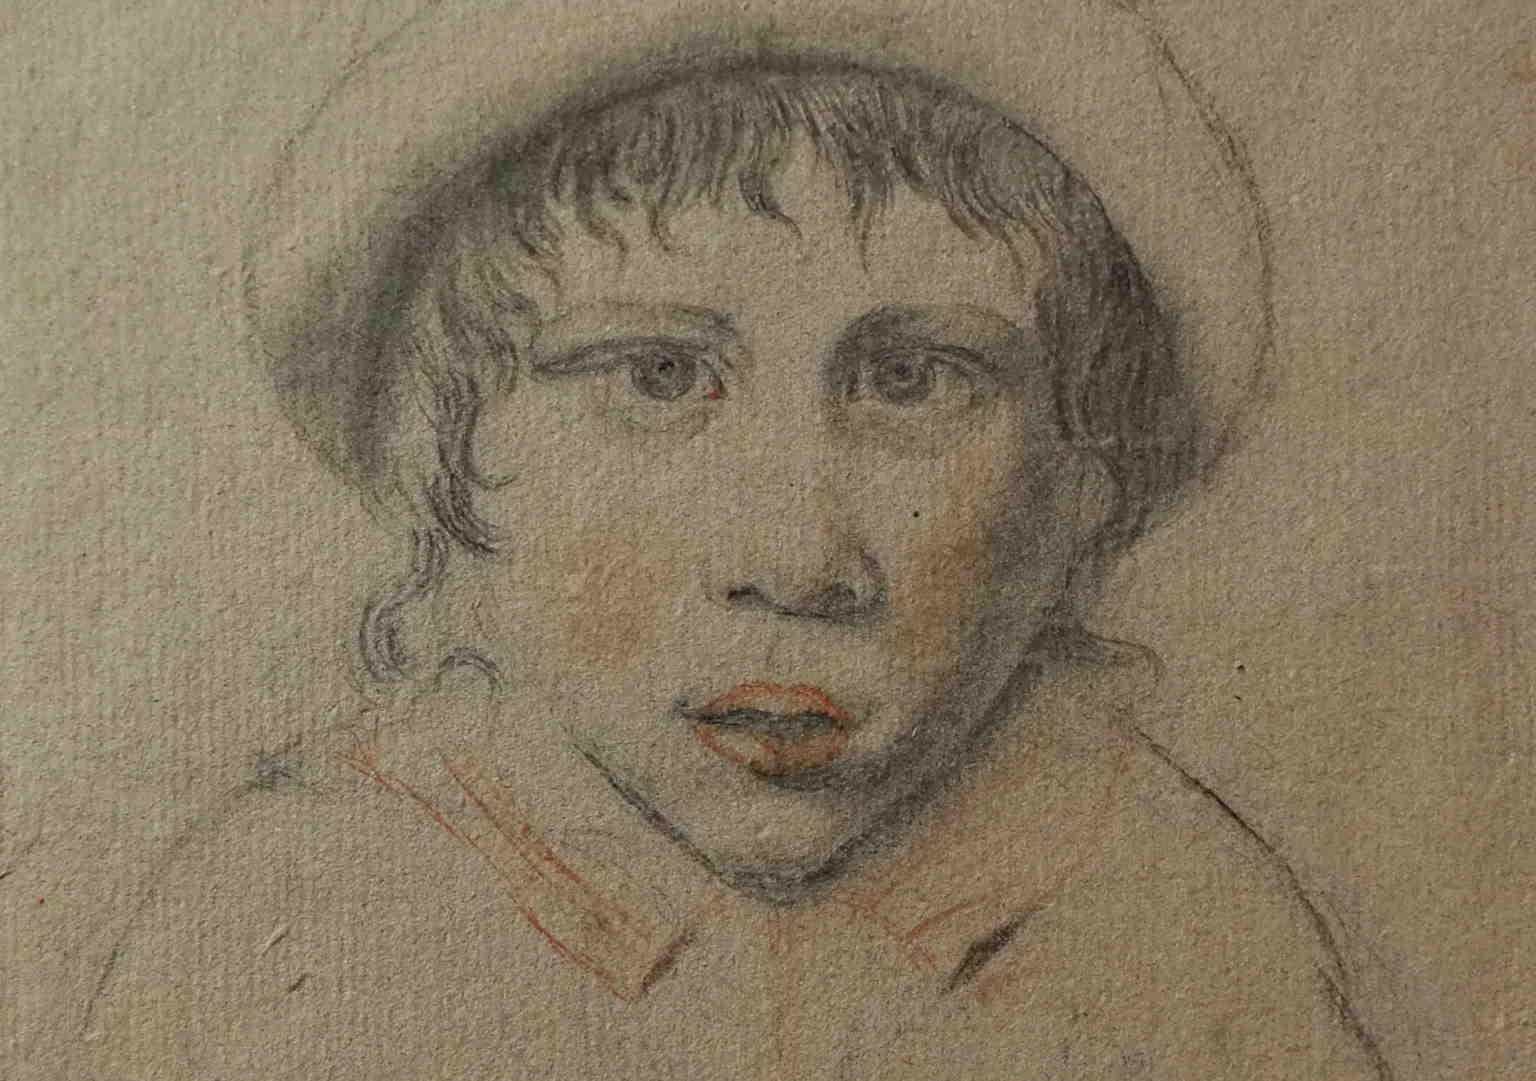 Disegno matite su carta ritratto di fanciullo con cappellino del XVIII secolo